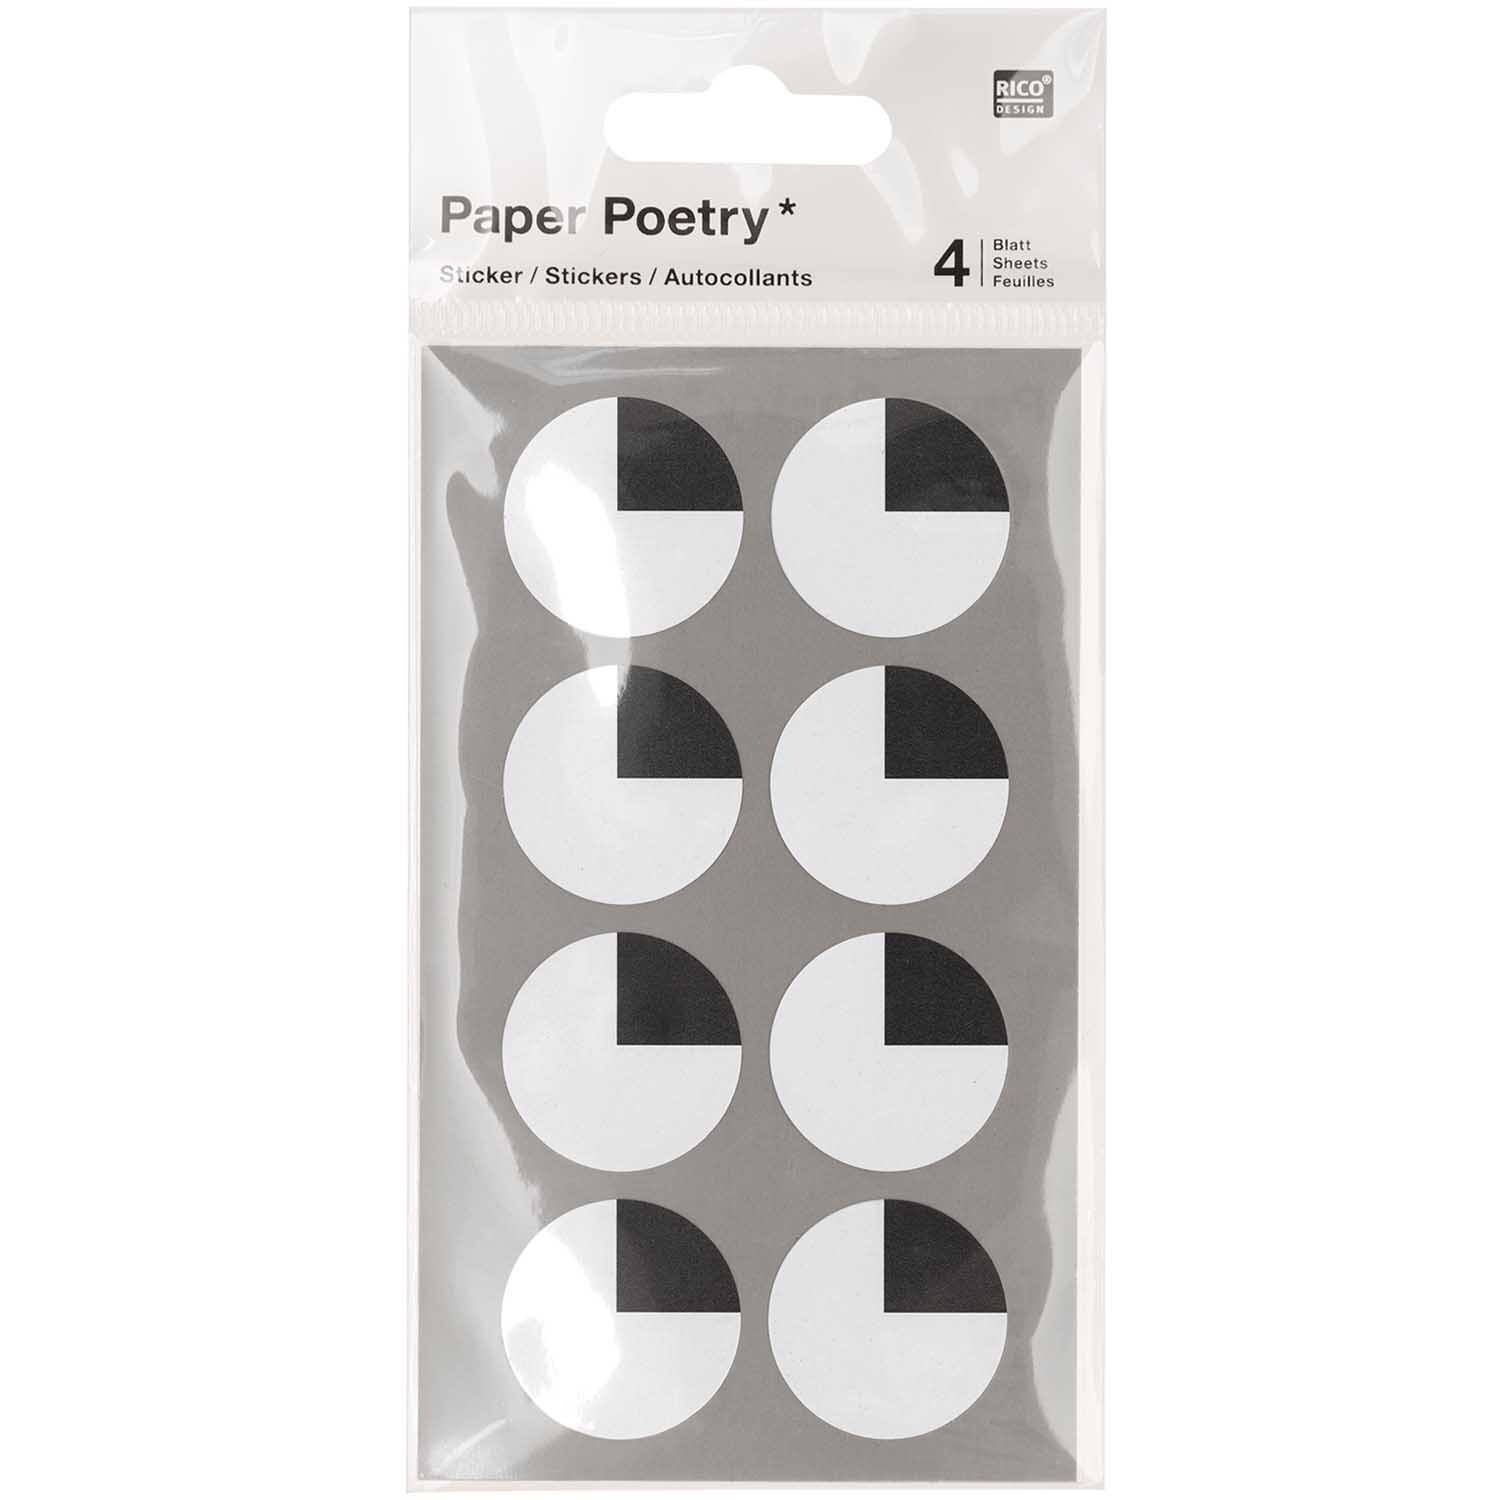 Paper Poetry Sticker Augen oben 4 Blatt